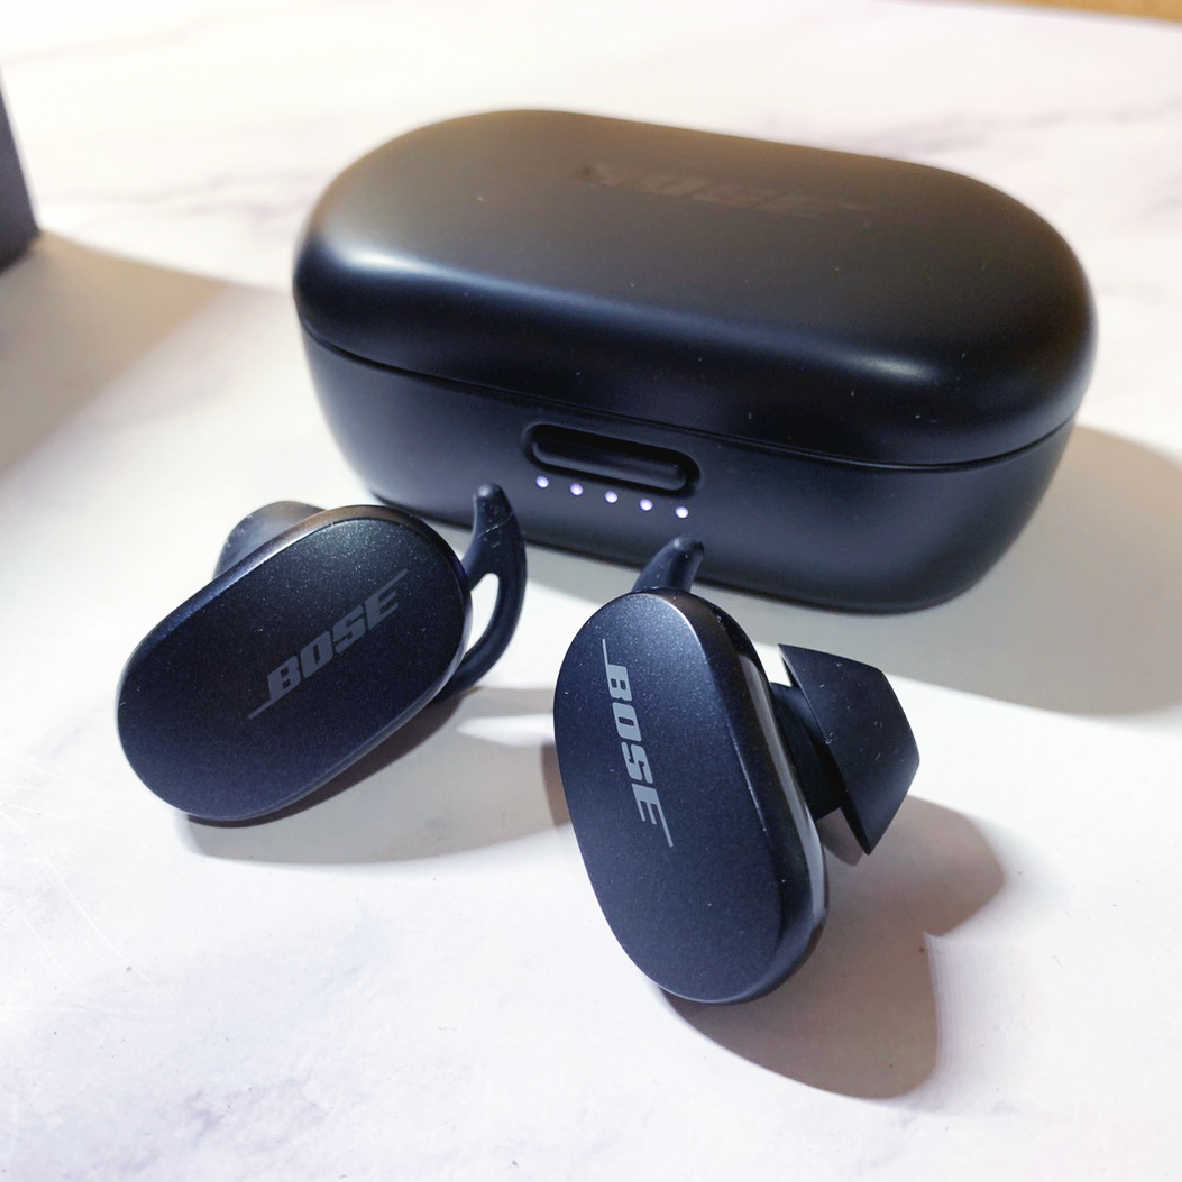 【福利機】Bose QuietComfort Earbuds 一代 消噪耳塞 降噪 真無線 藍芽耳機 | 金曲音響